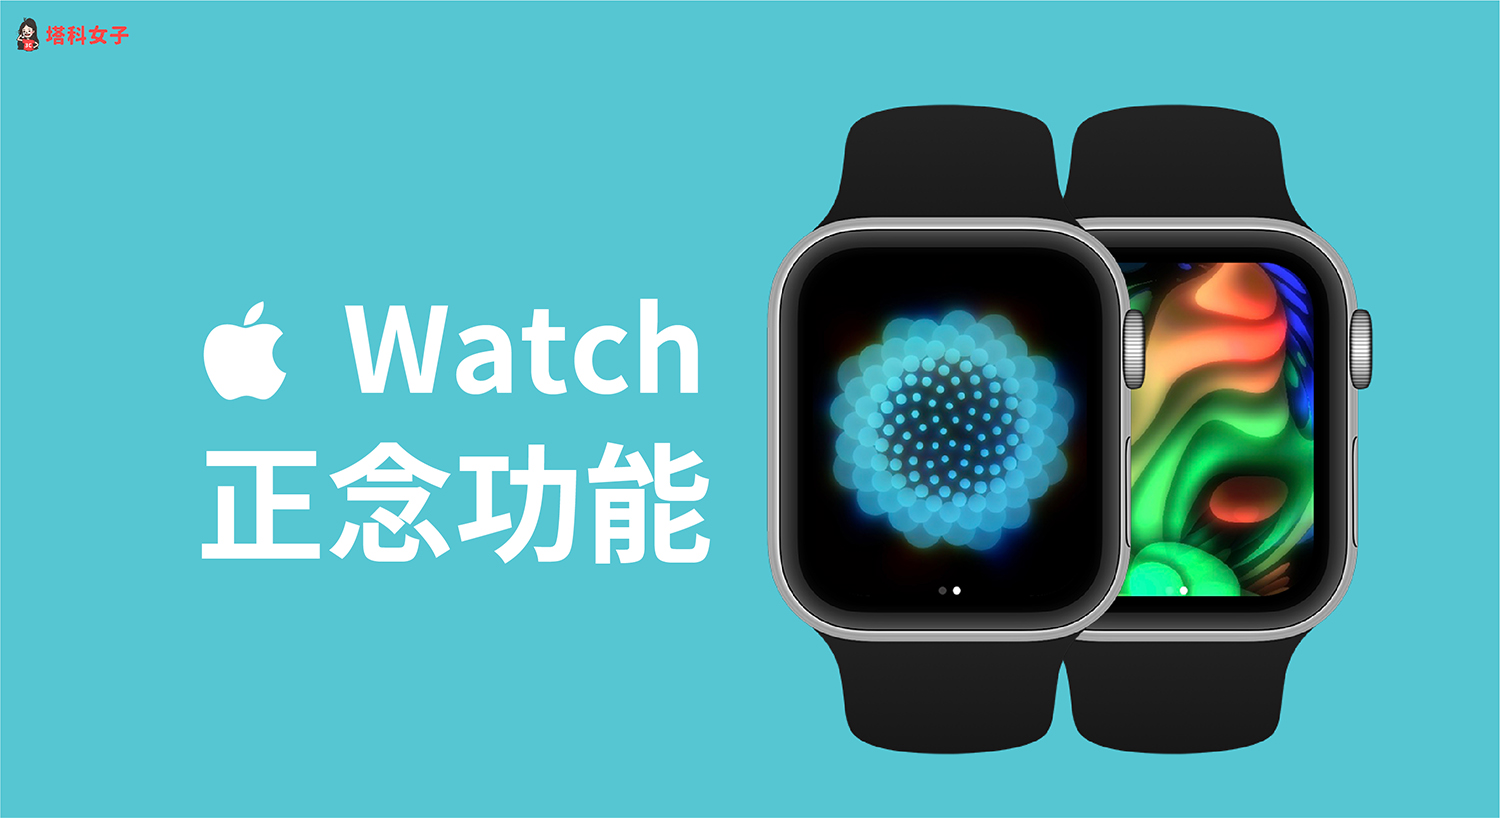 Apple Watch 正念 App 提供呼吸練習與反思模式，這篇教你怎麼用